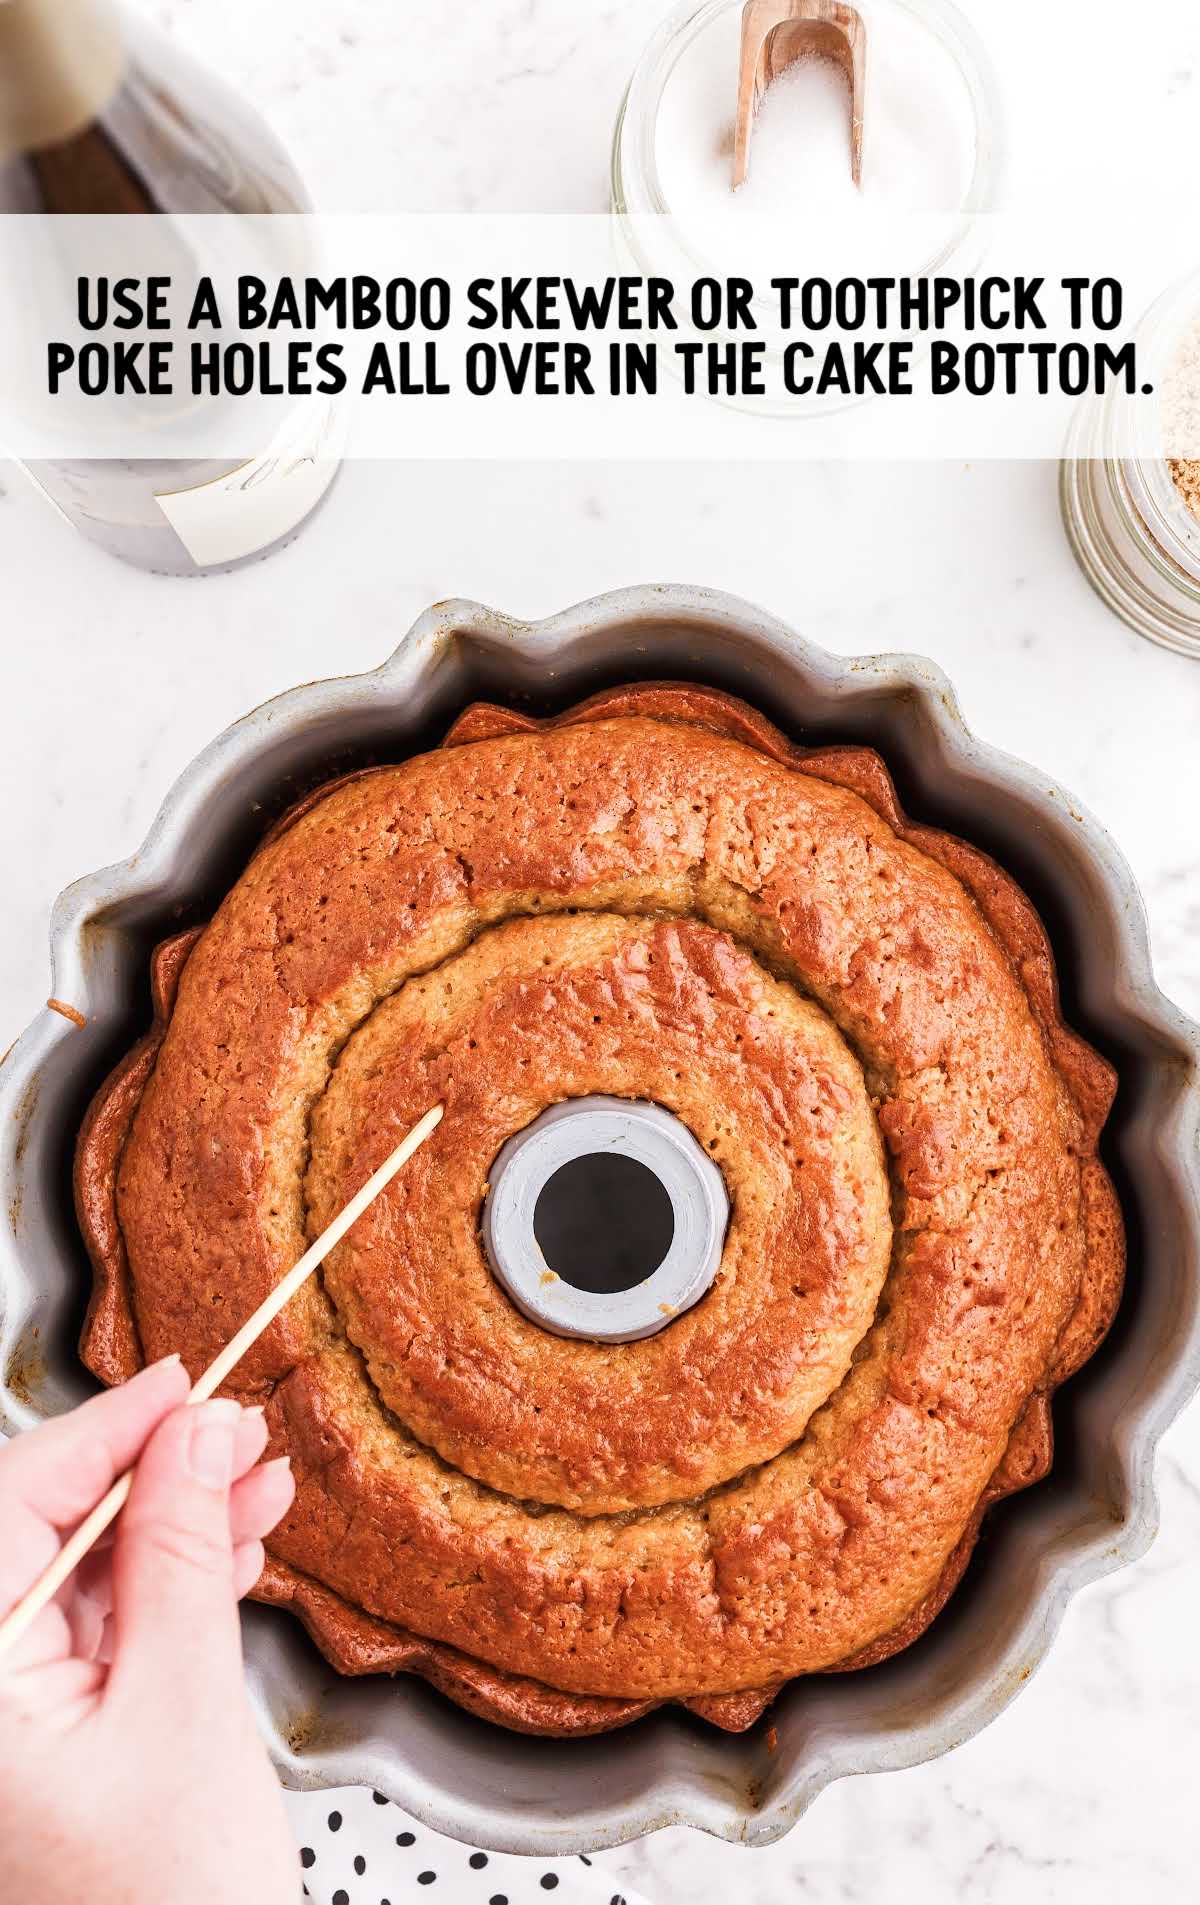 poke holes on the cake bottom